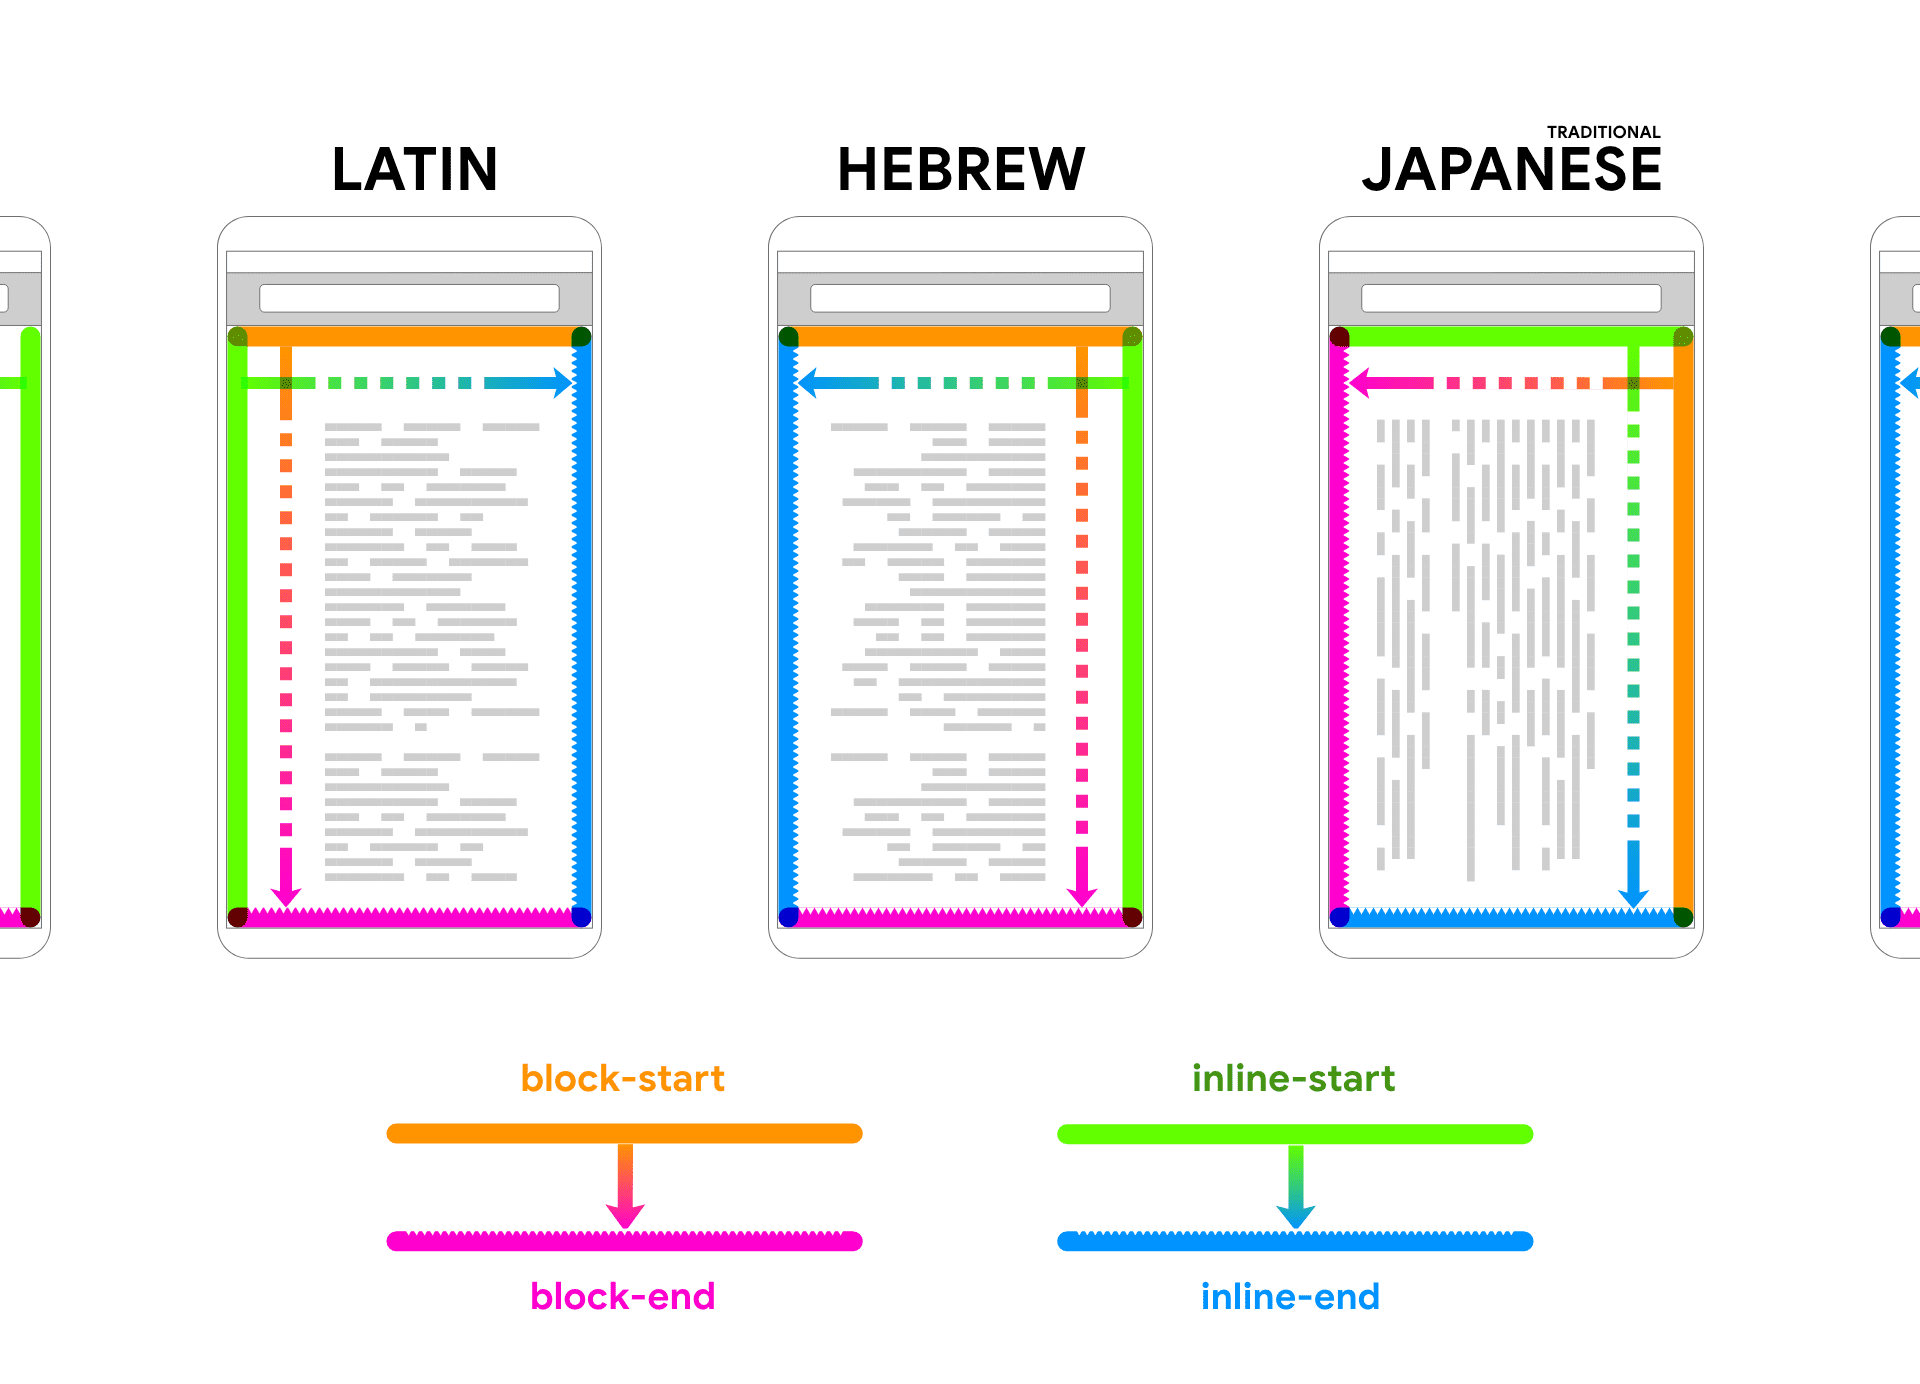 לטינית, עברית ויפנית מוצגות כערכי placeholder של טקסט בתוך מסגרת של המכשיר. חיצים וצבעים עוקבים אחרי הטקסט כדי לעזור לקשר בין שני הכיוונים של הבלוק ובתוך השורה.